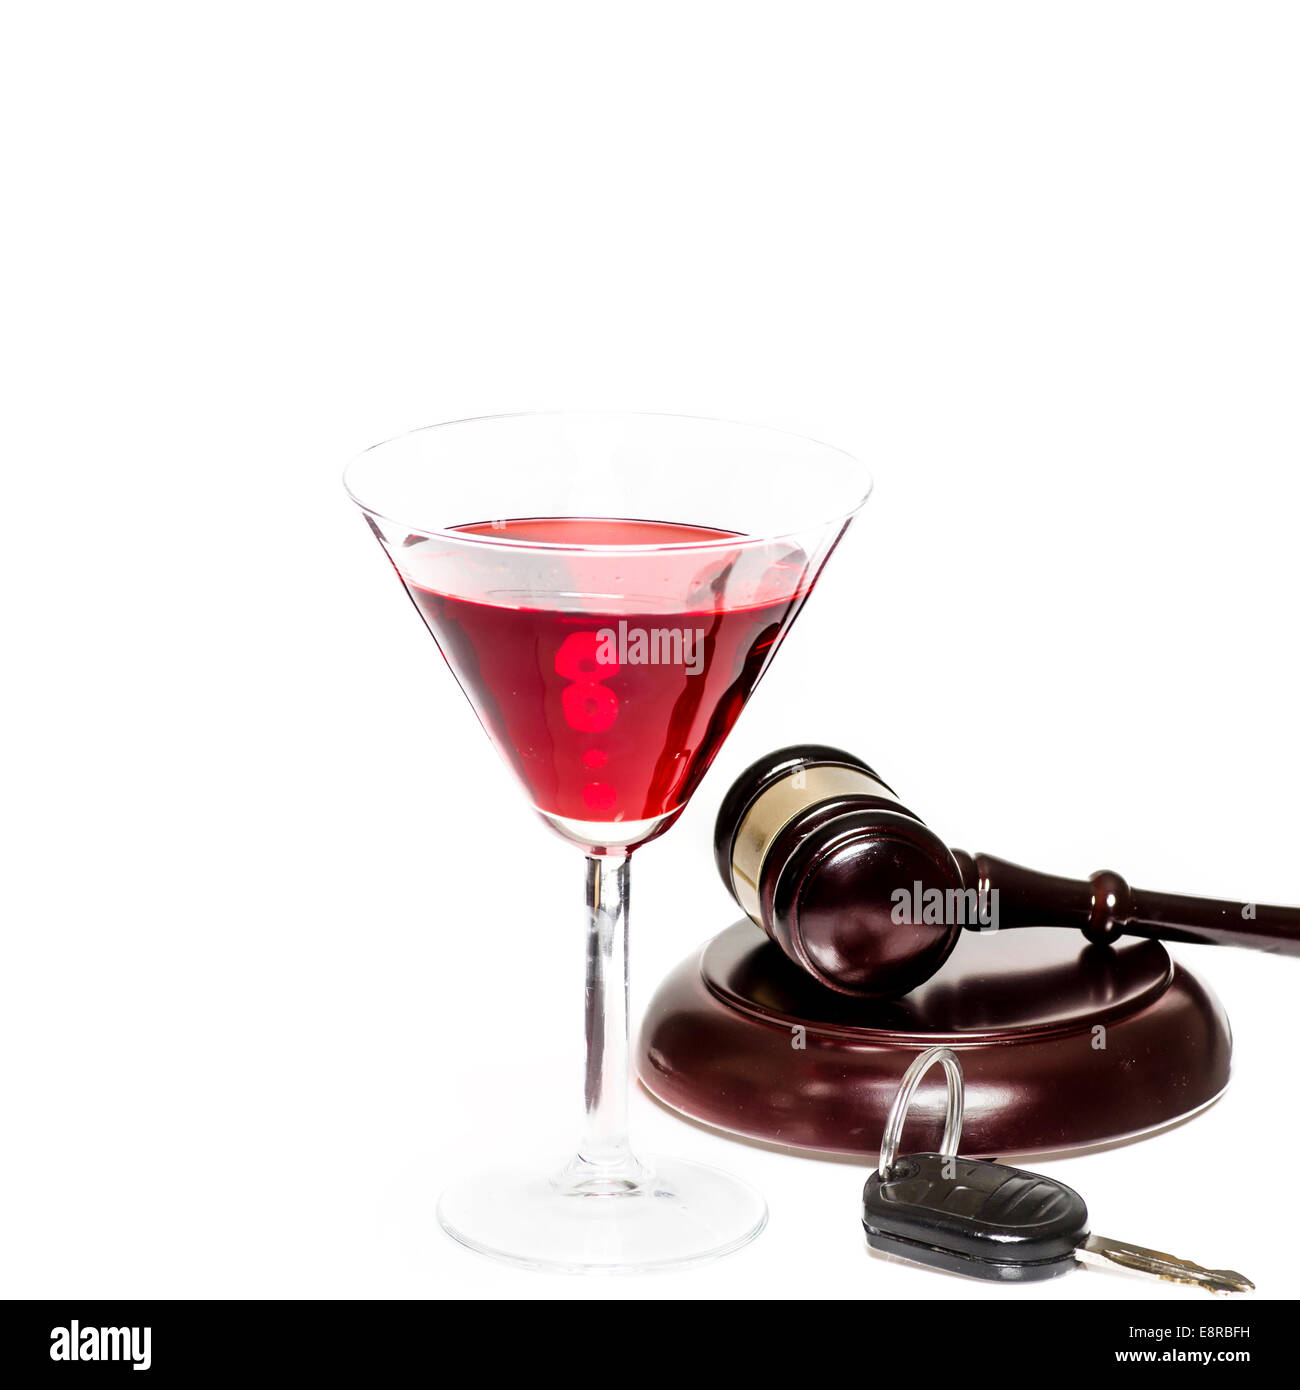 Alkohol am Steuer, unter Einfluss von Alkohol legal Recht Konzept Bild Stockfoto